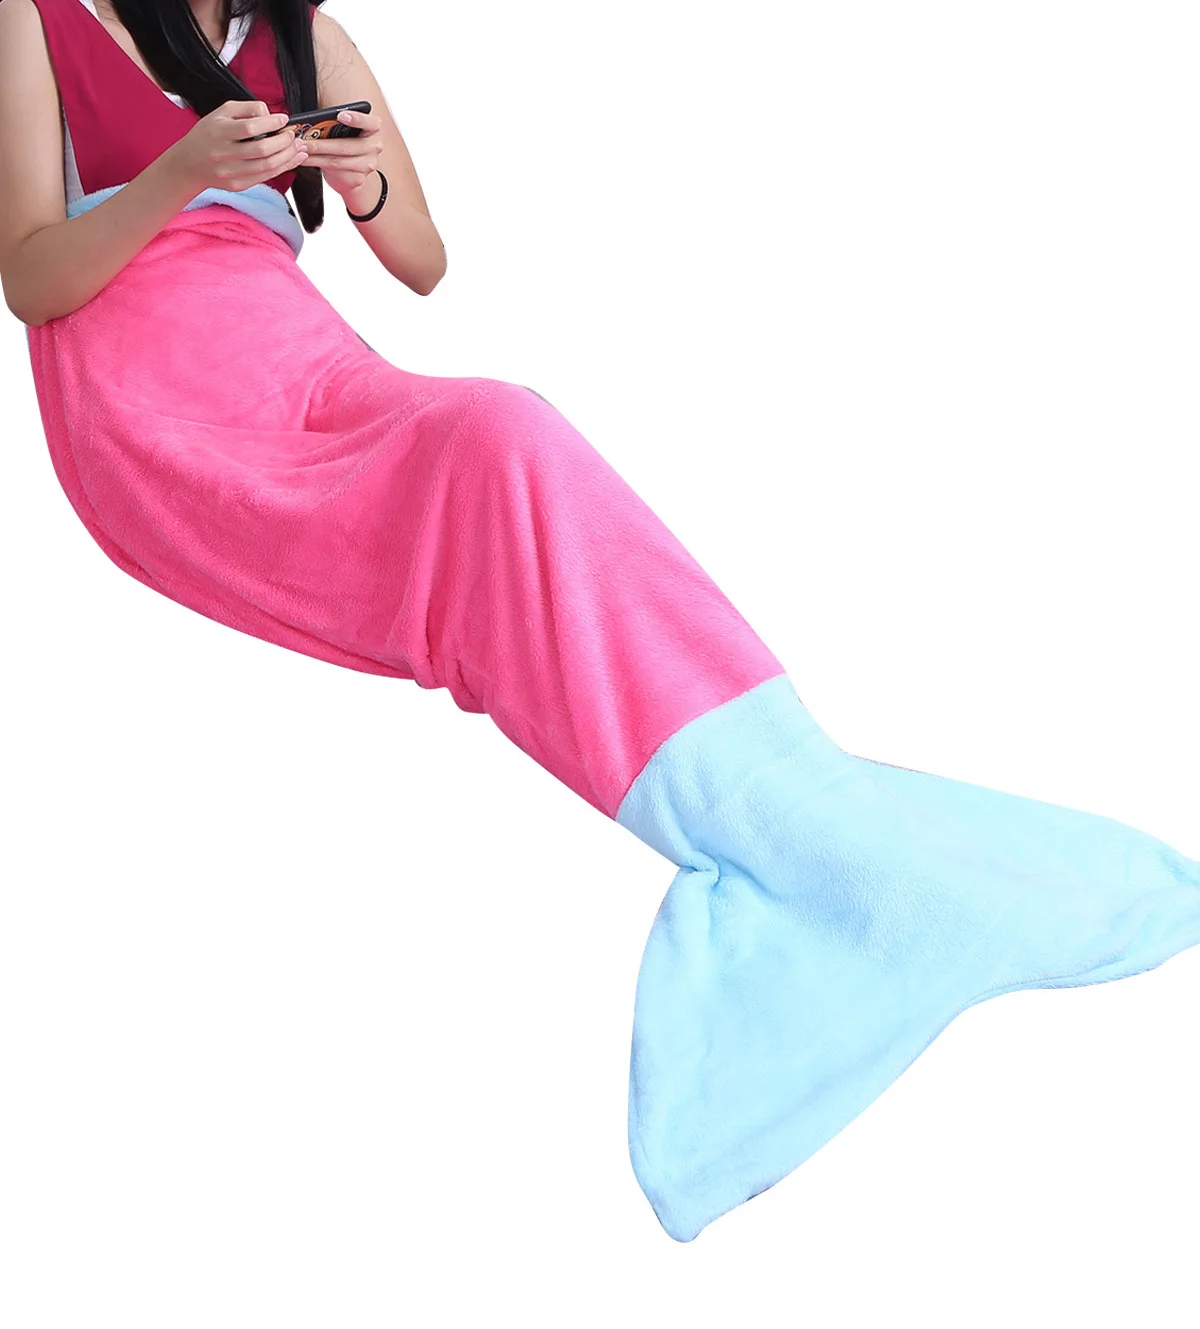 Дешевая фланель флис русалки Одеяло покрывало для сна ТВ диван Одеяло детские пижамы для детей и взрослых, покрывала для постели сумка тяжелое одеяло - Цвет: Hot Pink Blue